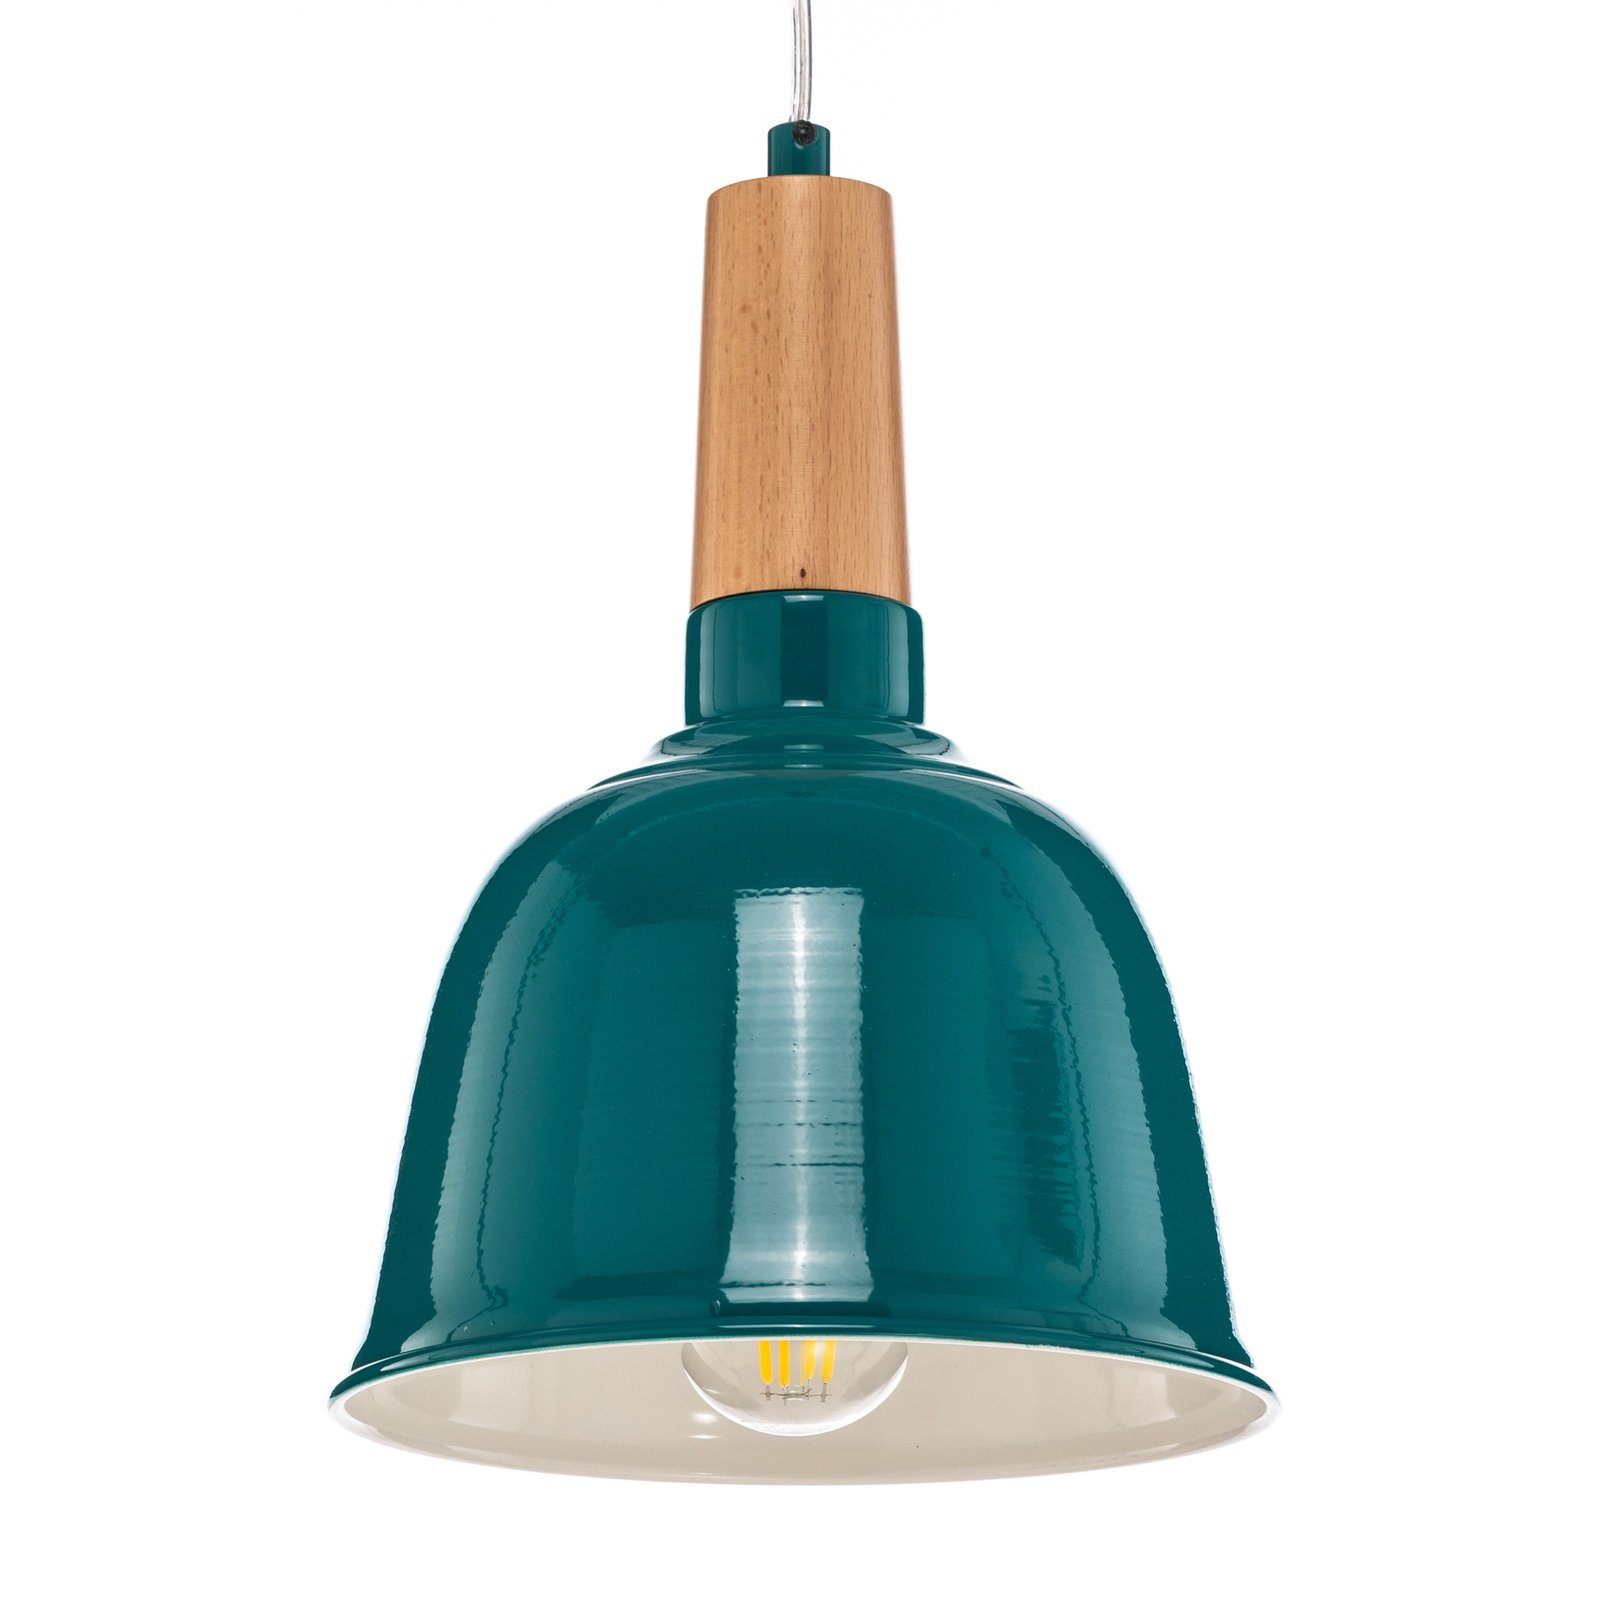 Hanglamp AV-4100-A2-BTK-20 in turquoise glanzend